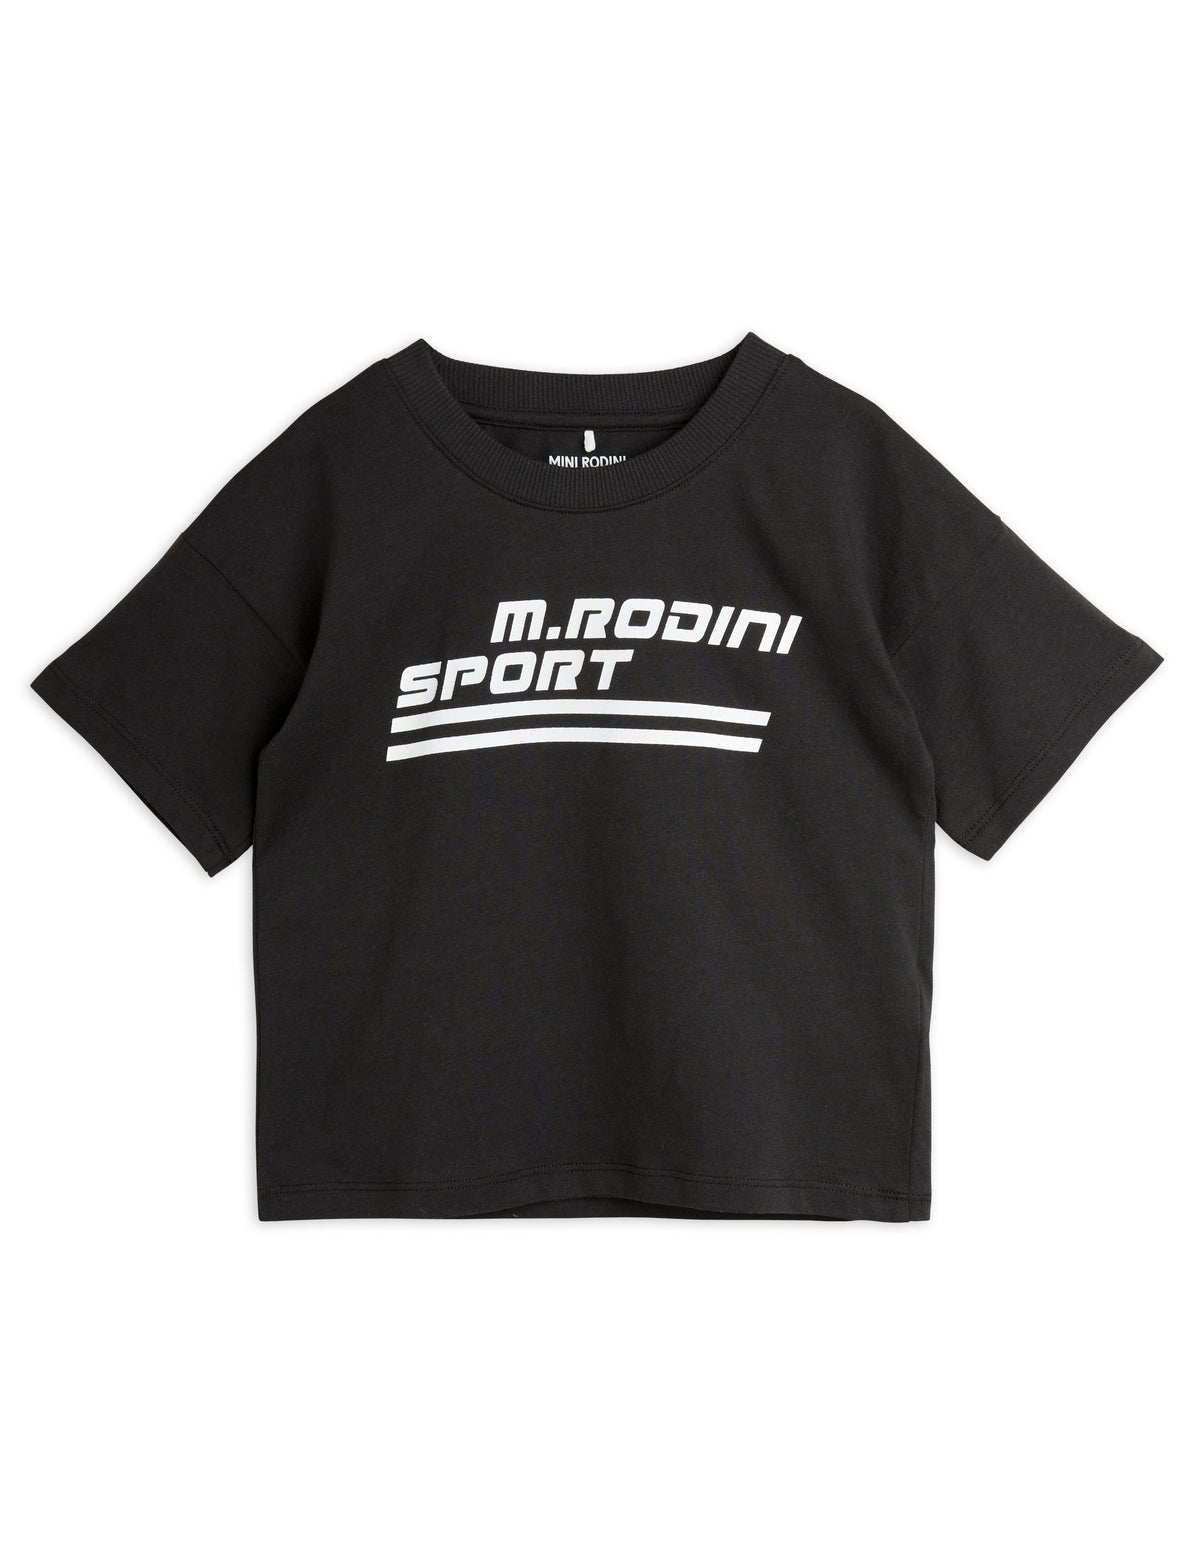 Sport T-shirt black, Mini rodini no